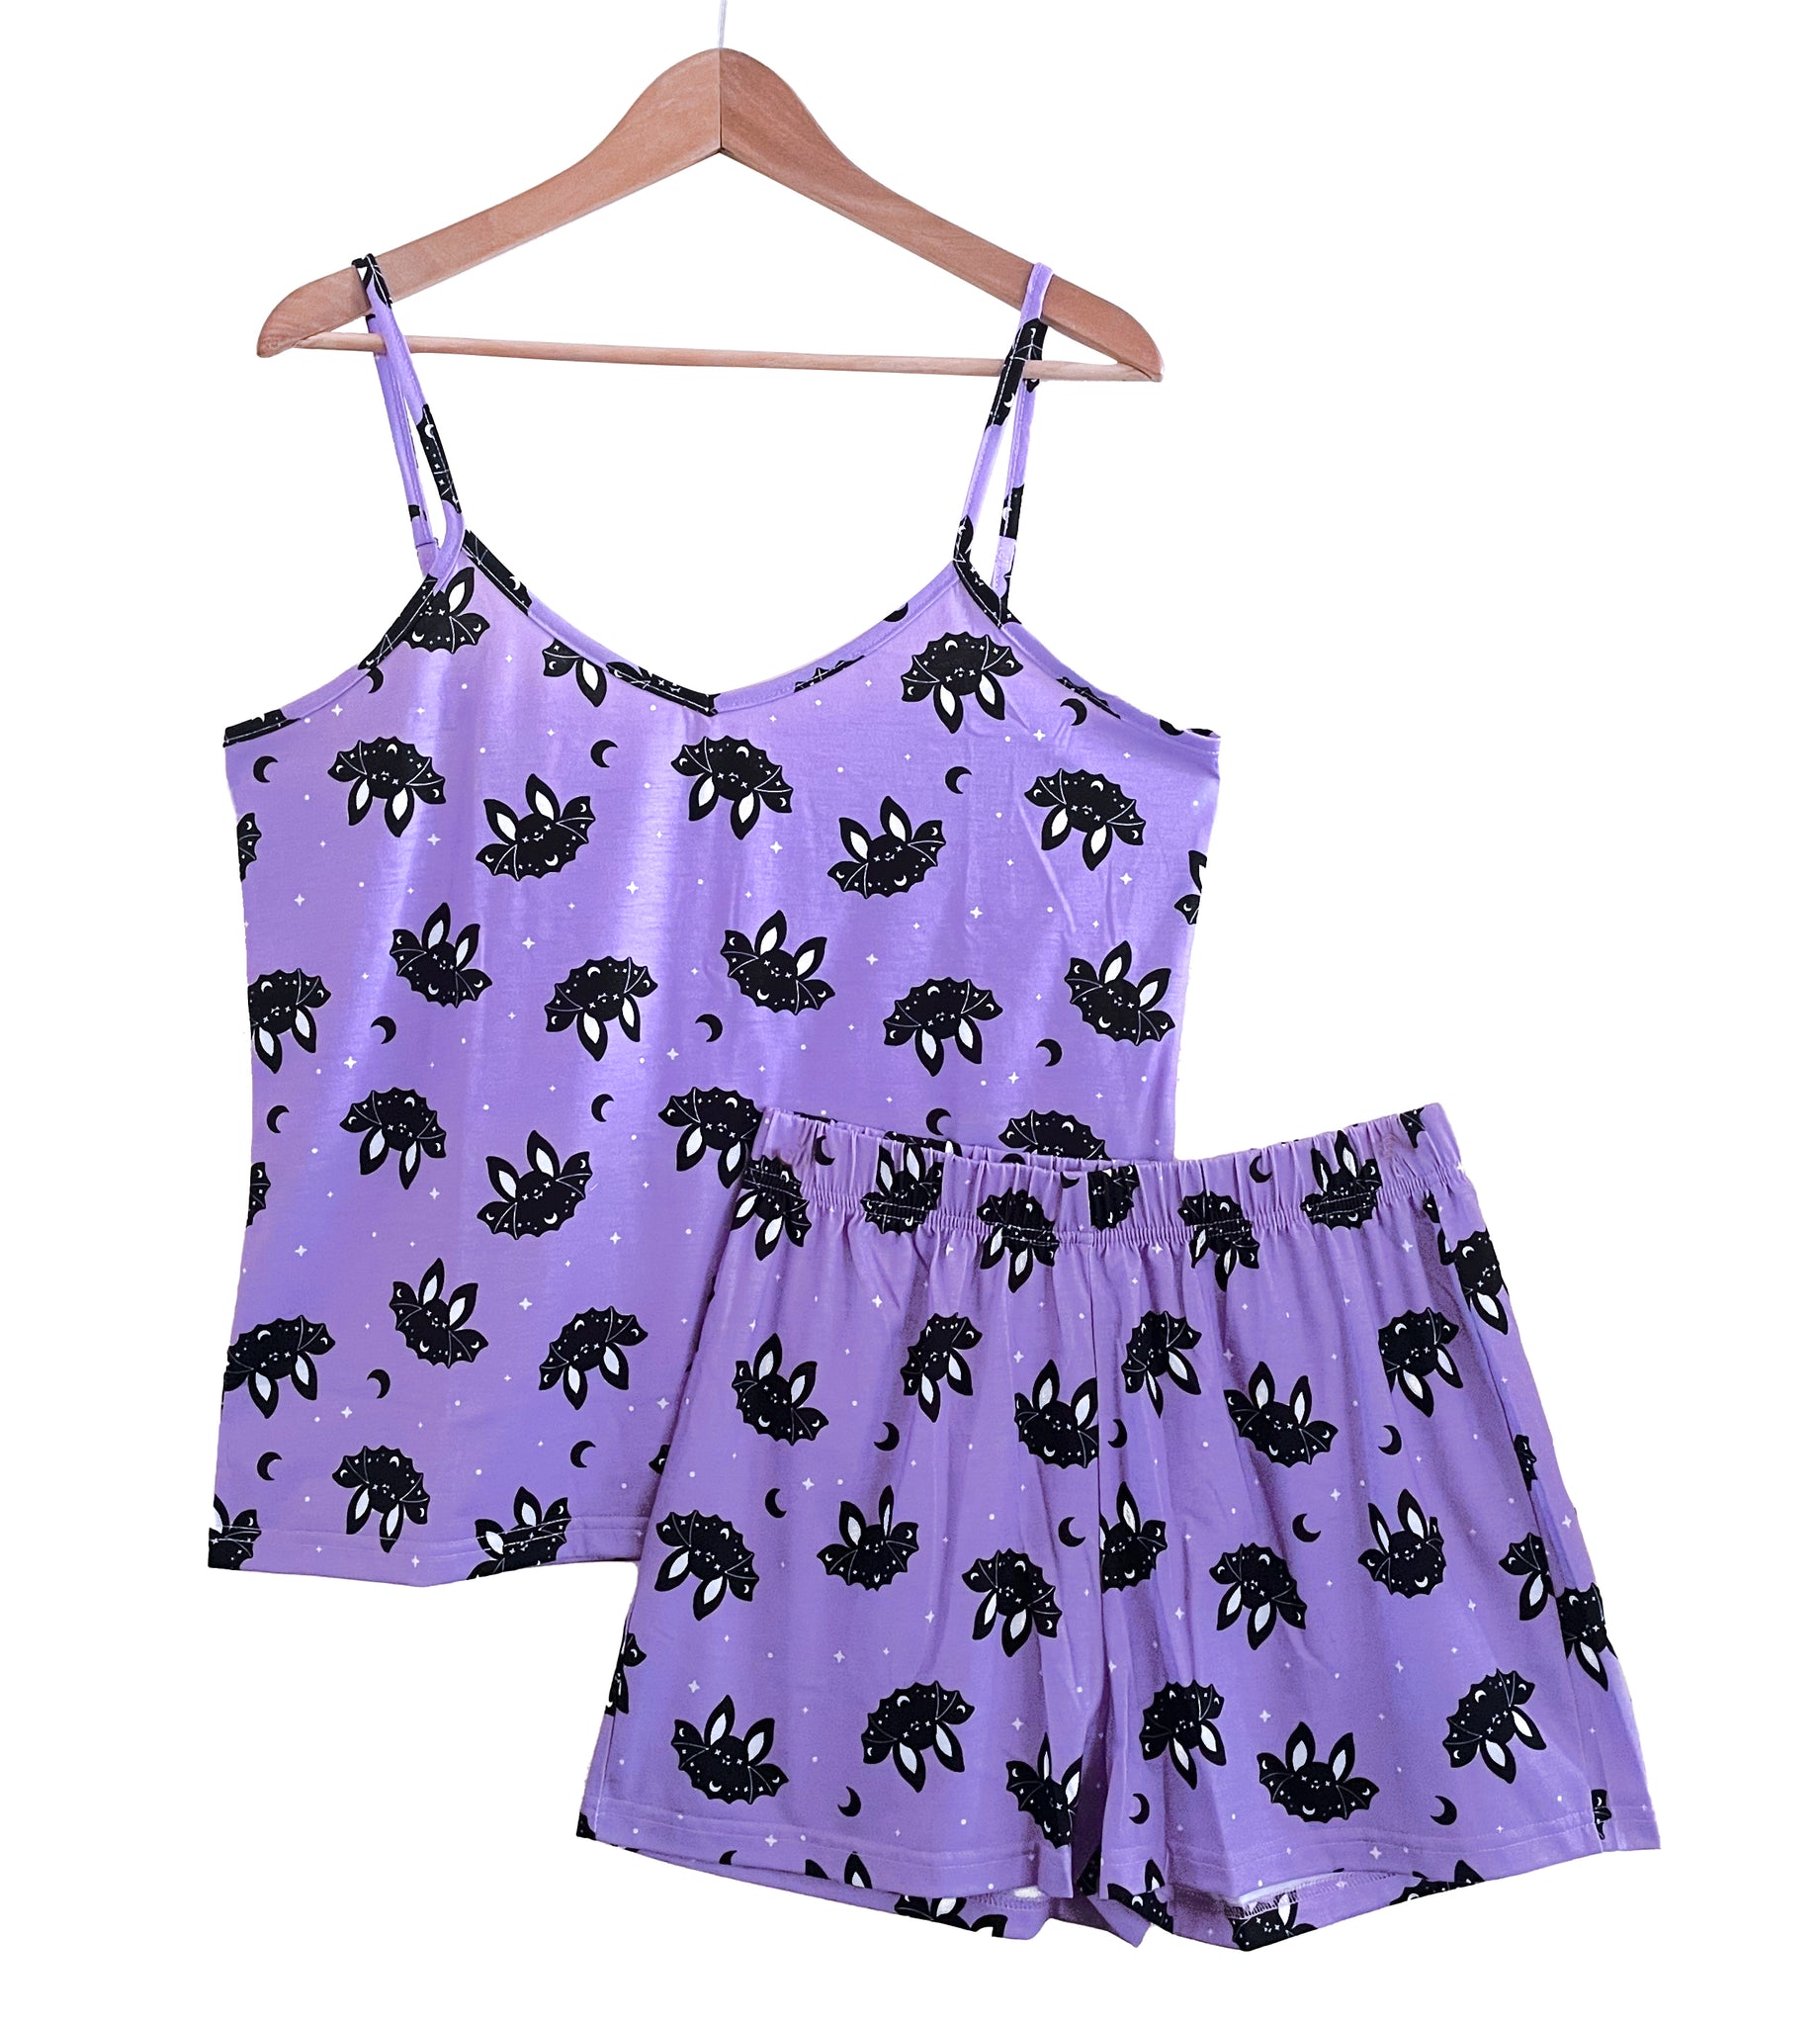 Lavender Bat Pajamas Shorts and Tank Top Set